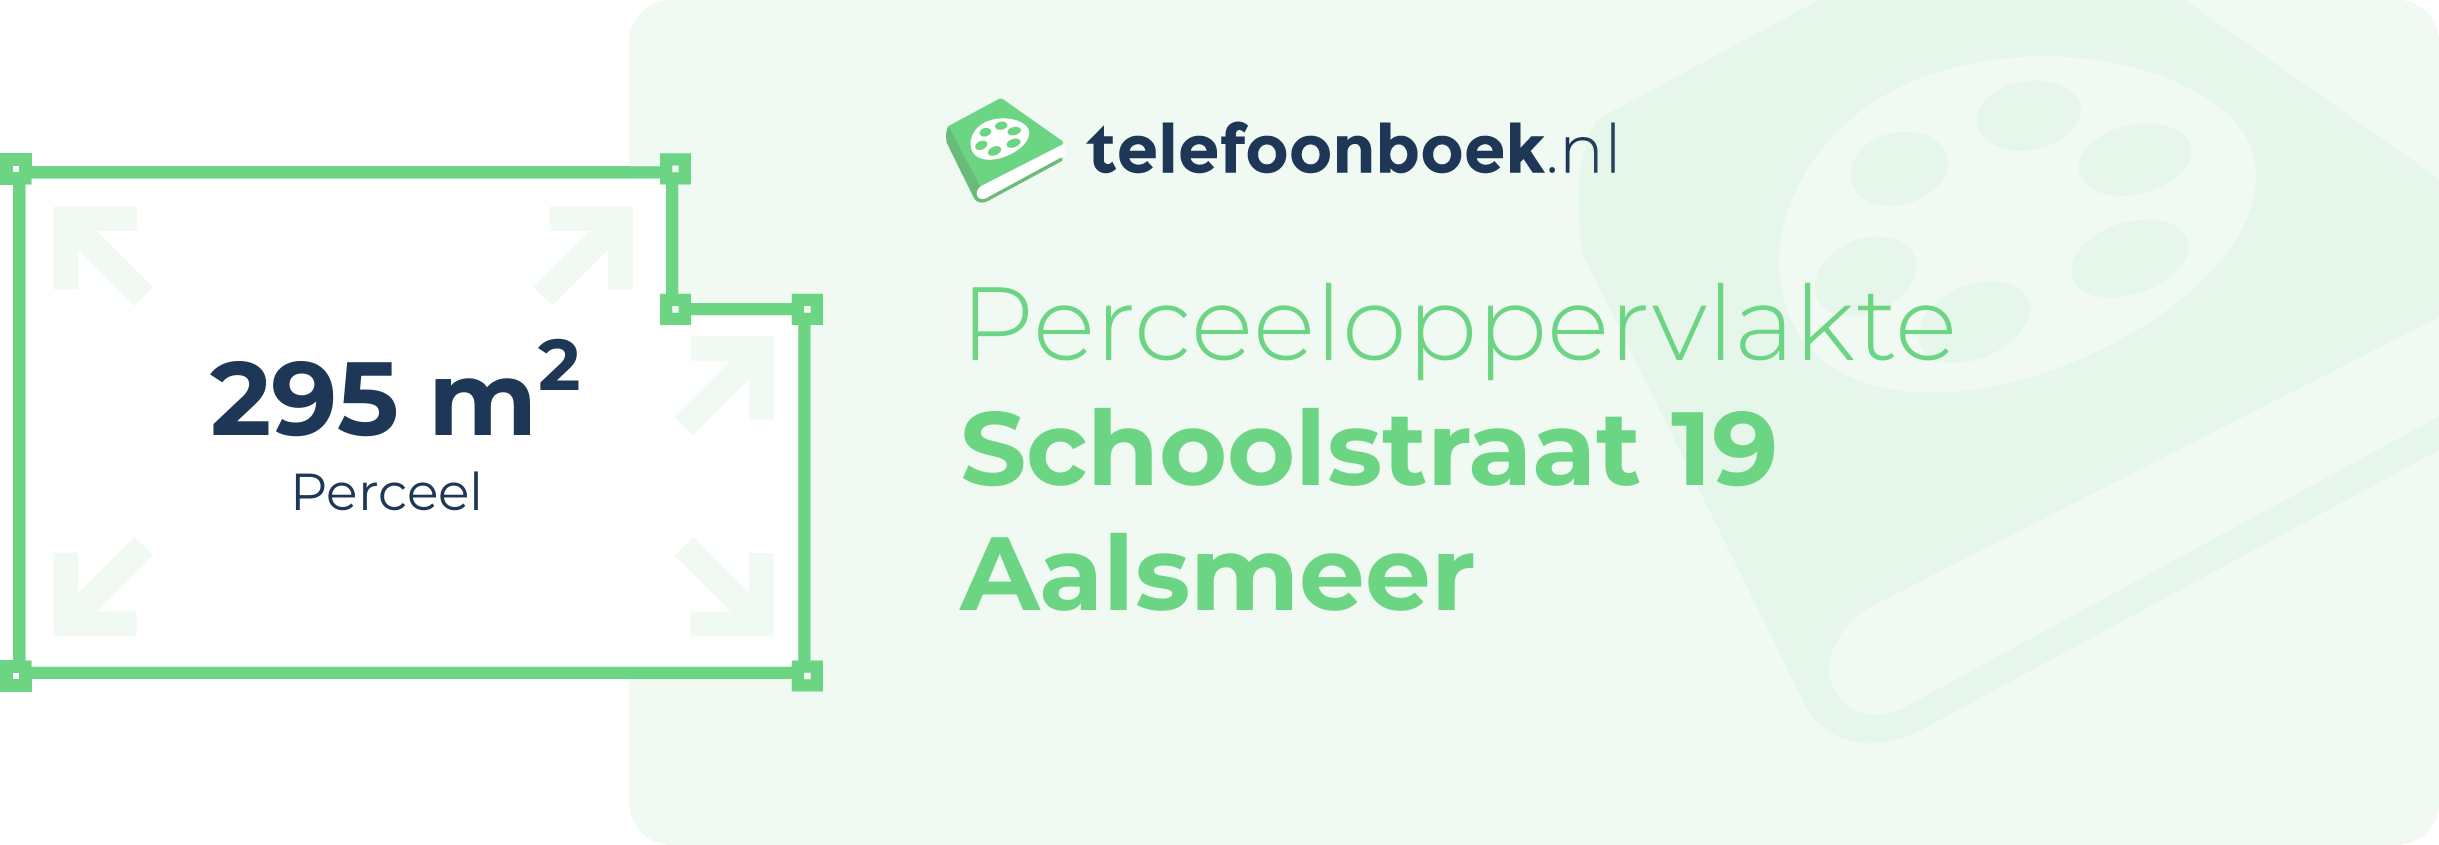 Perceeloppervlakte Schoolstraat 19 Aalsmeer